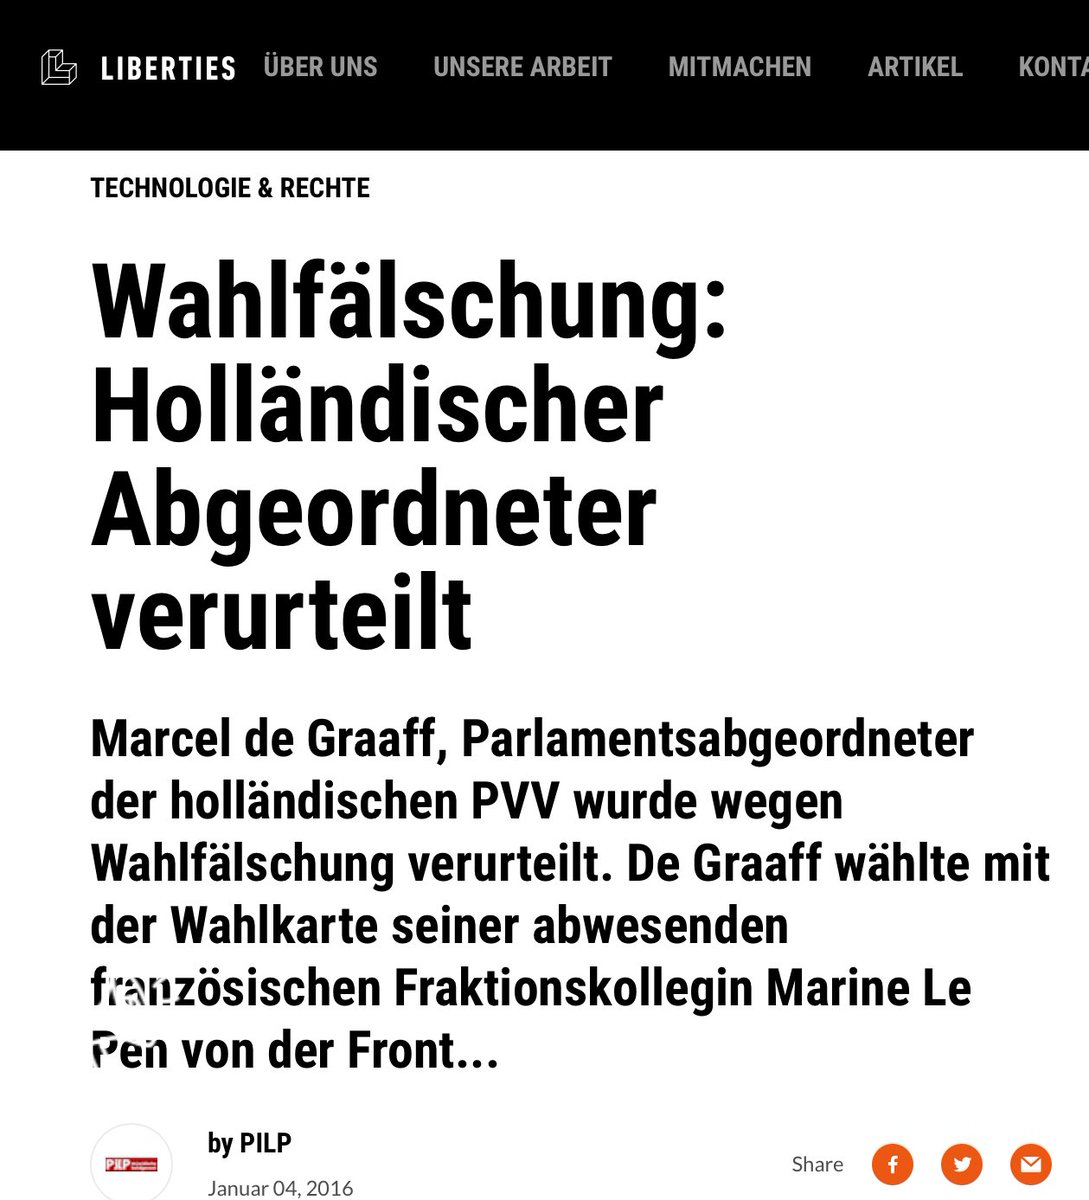 Das Büro eines Ex-Mitarbeiters des deutschen AfD-Abgeordneten #MaximilianKrah im #Europaparlament durchsucht.
Krah-Mitarbeiters #GuillaumeP arbeitet inzwischen für den niederländischen Abgeordneten #MarcelDeGraaff
#RussiaIsATerroristState 
derstandard.de/story/30000002…